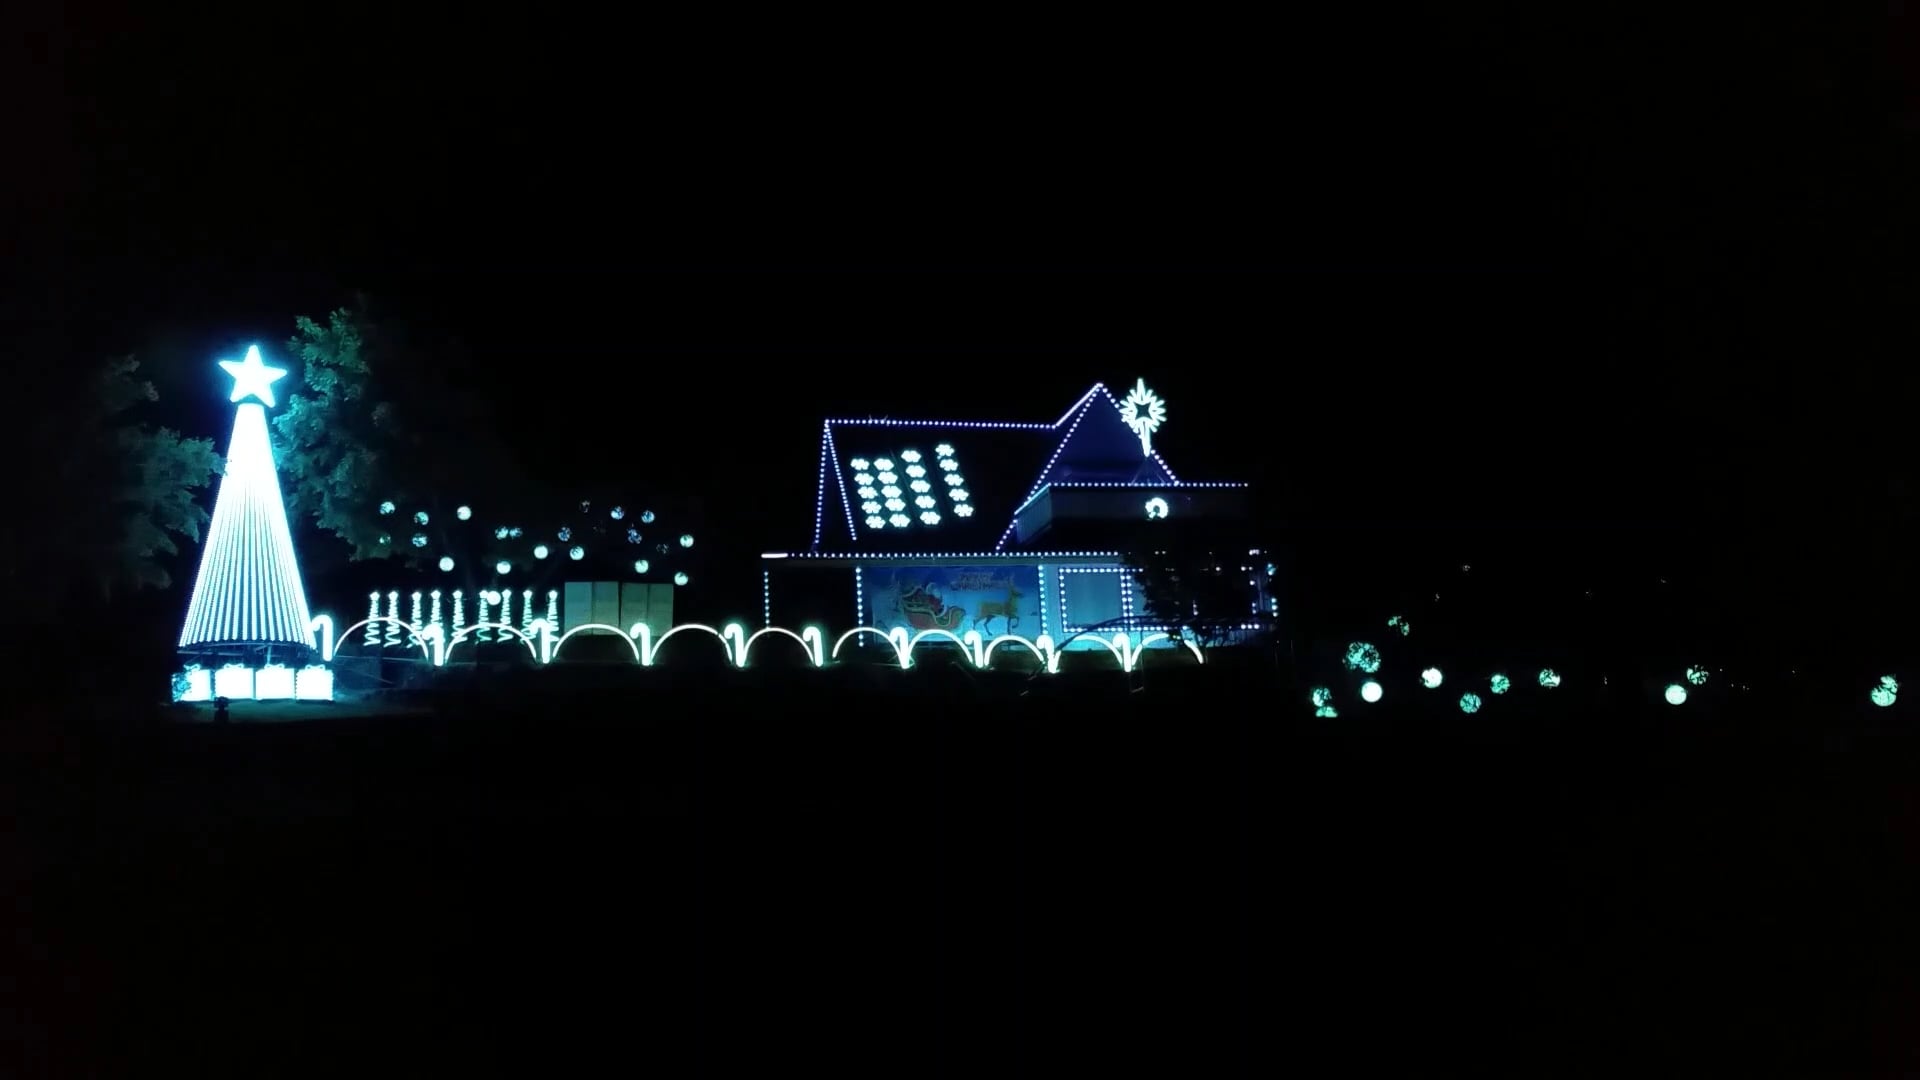 Eastern fantastisk lække ACDC Thunderstruck - Oberon Christmas Lights on Vimeo